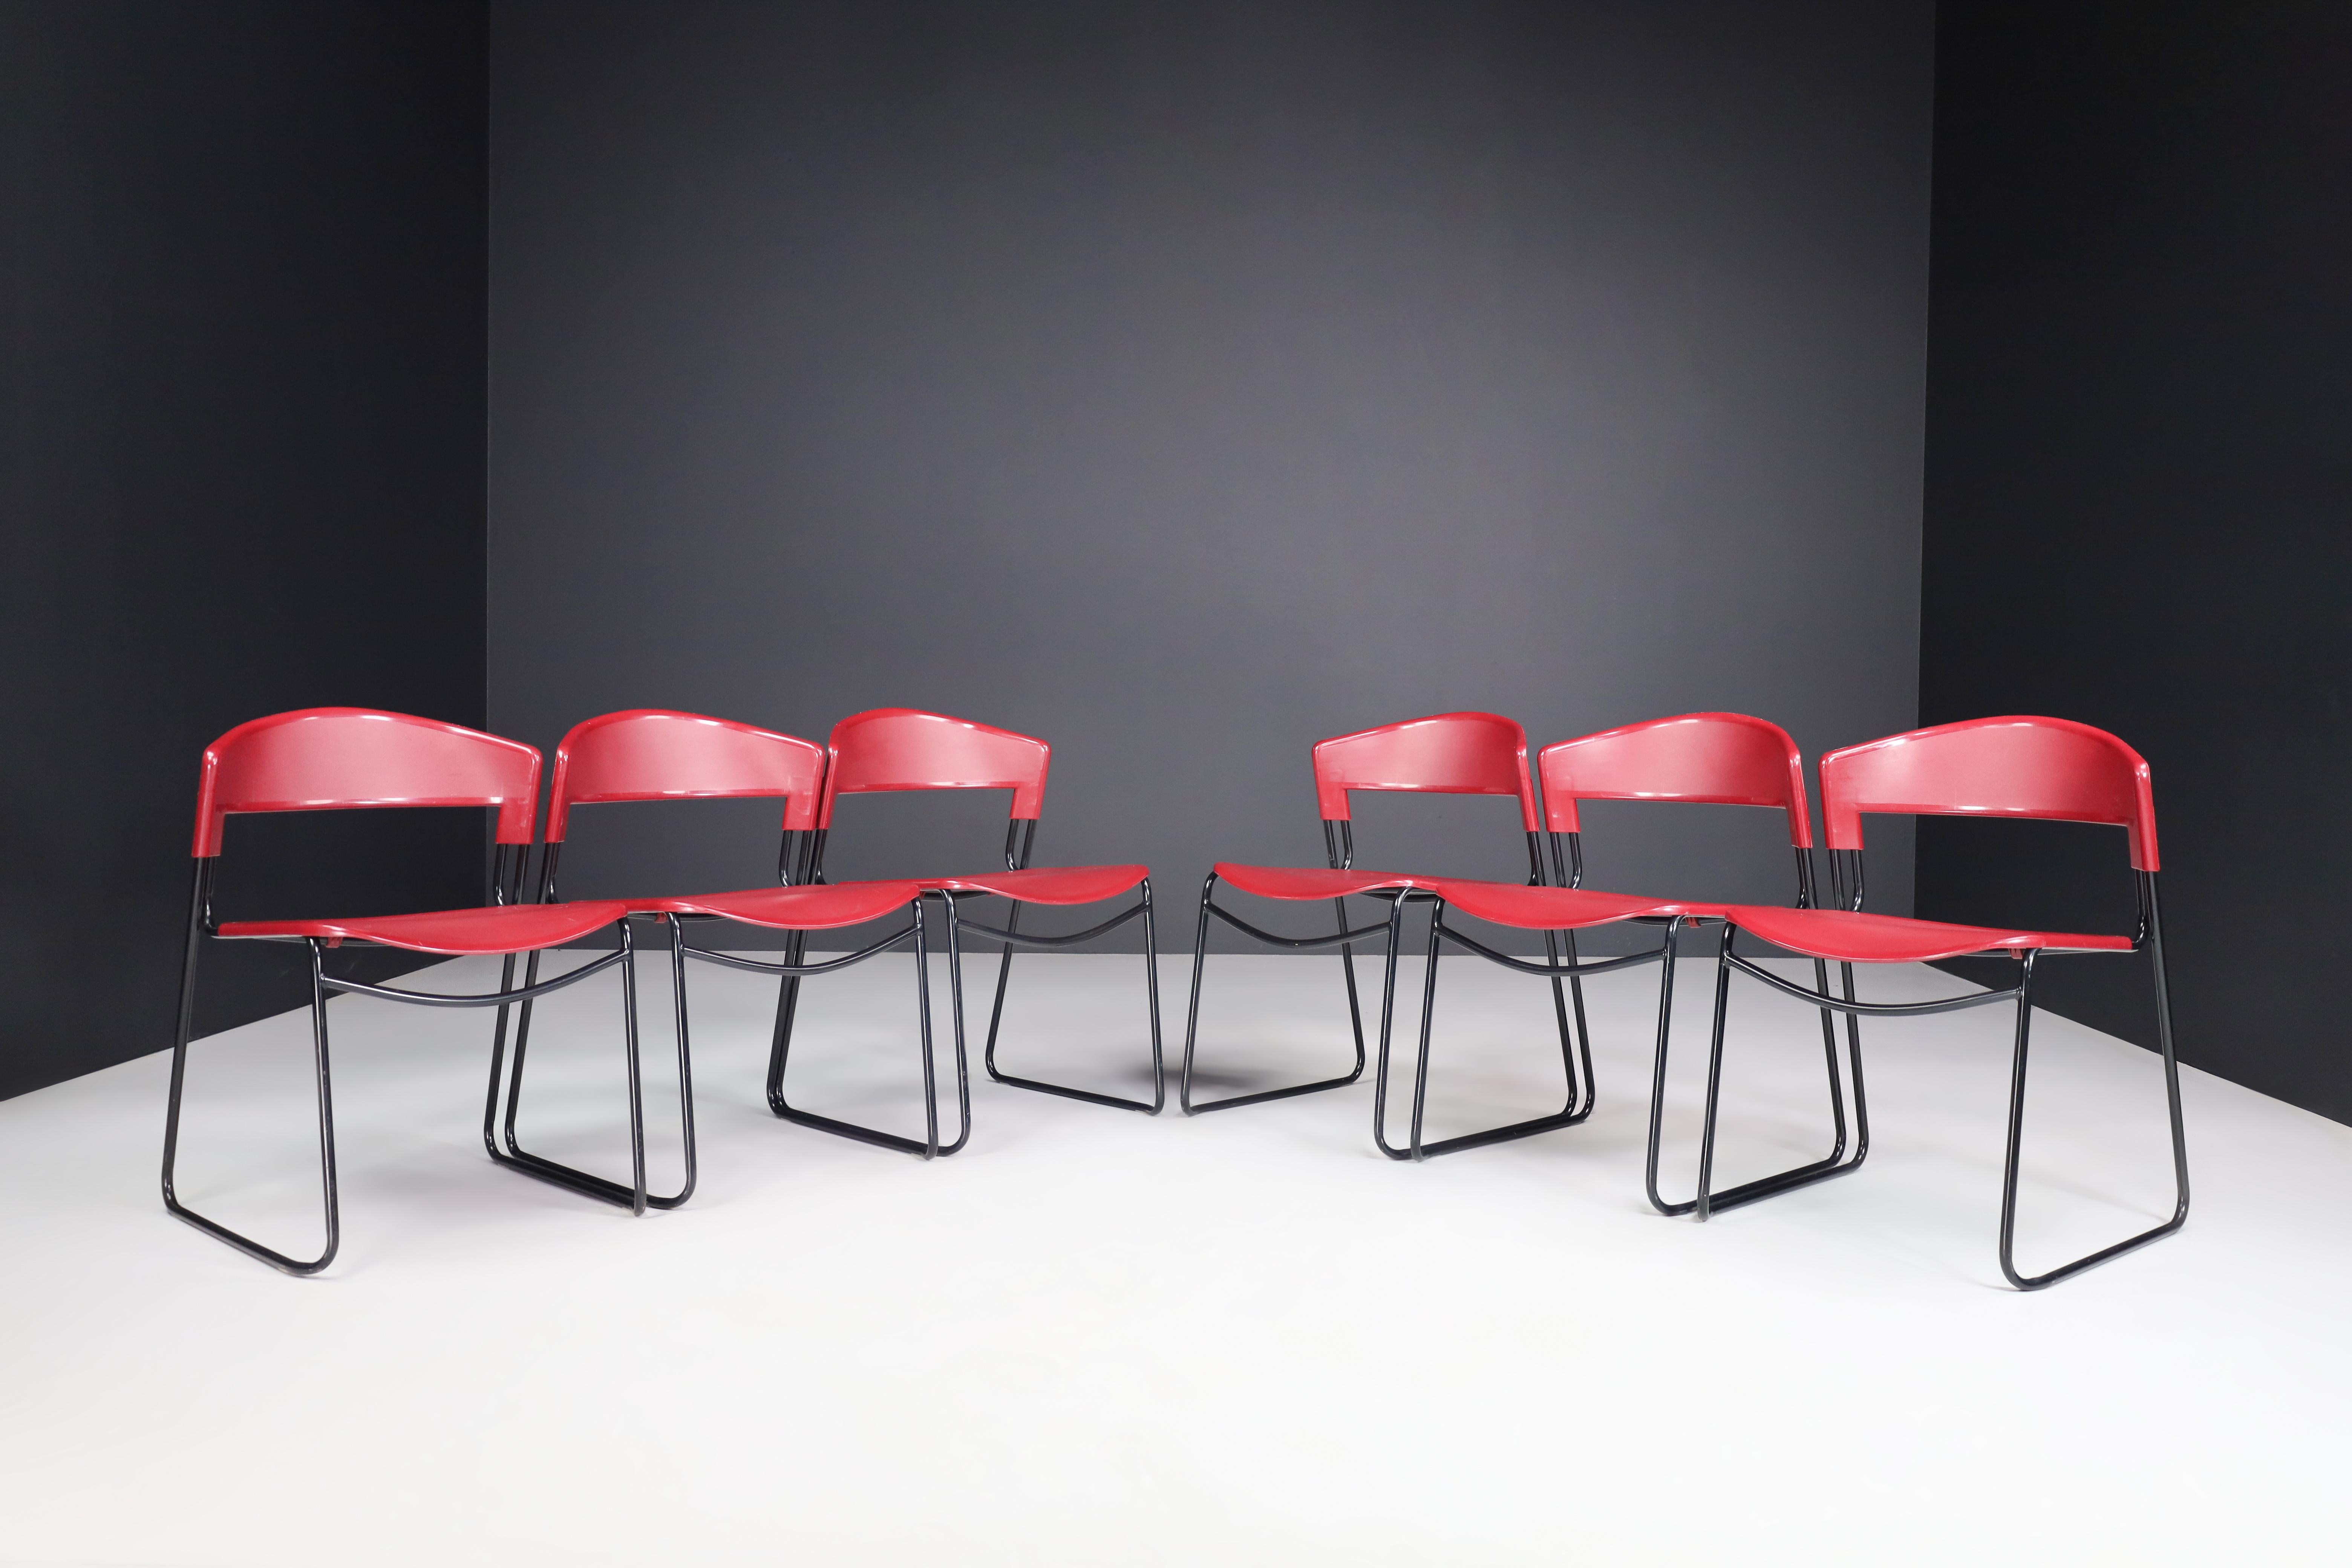 Ensemble de 6 chaises empilables Paolo Favaretto & Airborne Assisa Italie années 1980

Chaises très design avec une structure en acier tubulaire revêtue de noir et une assise et un dossier en polypropylène. C'est l'architecte et designer Paolo